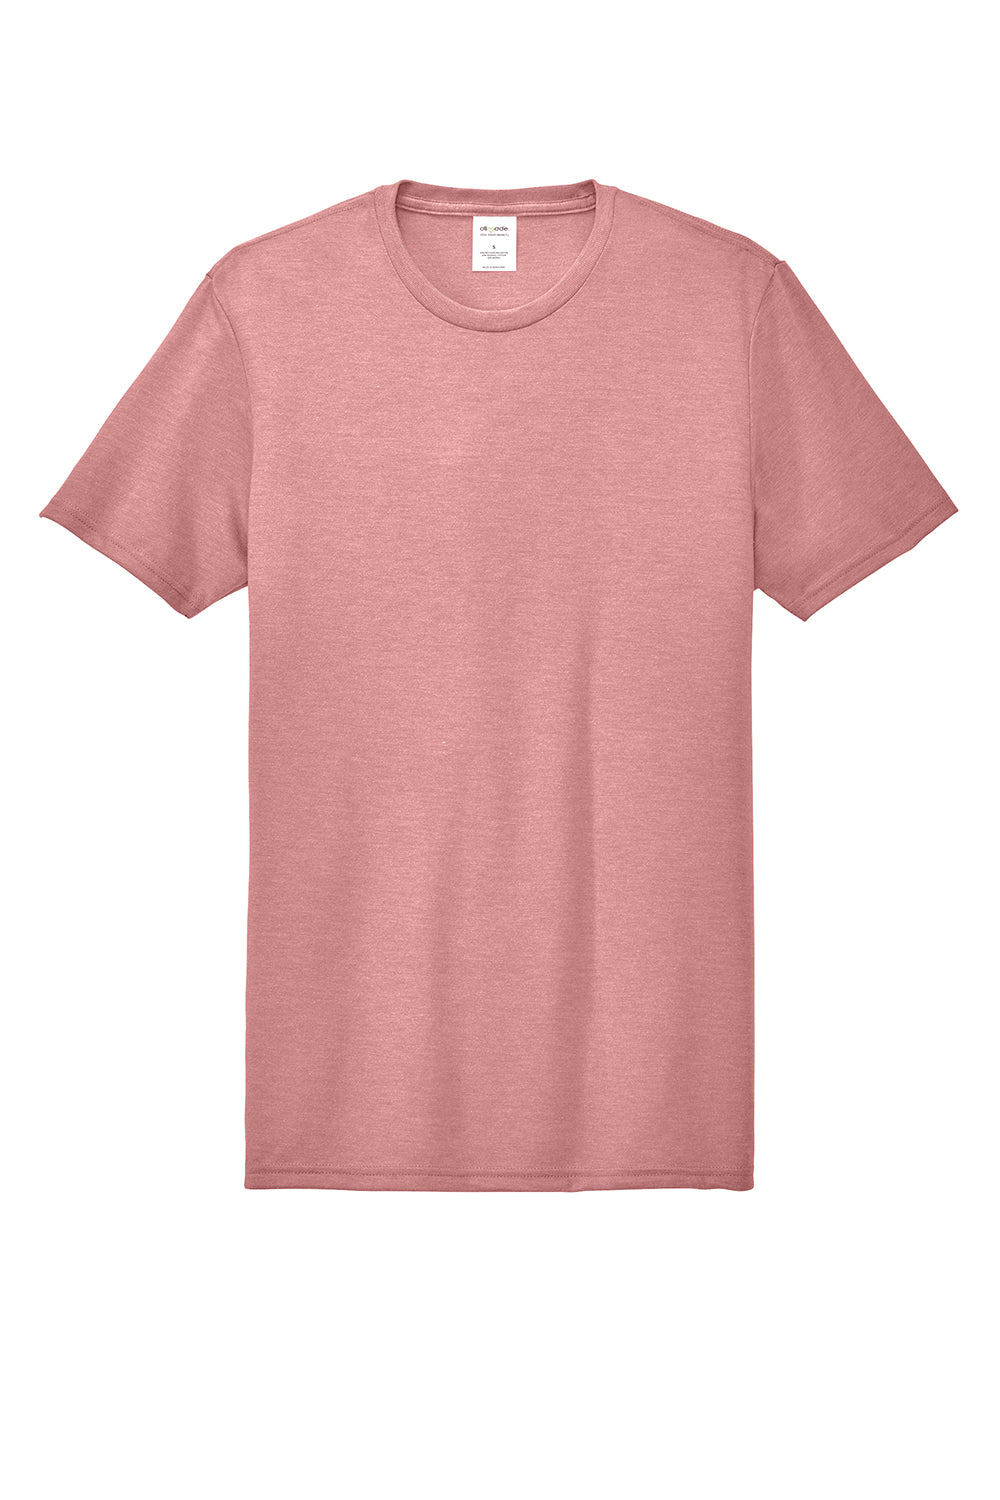 Allmade AL2004 Mens Short Sleeve Crewneck T-Shirt Vintage Rose Pink Flat Front